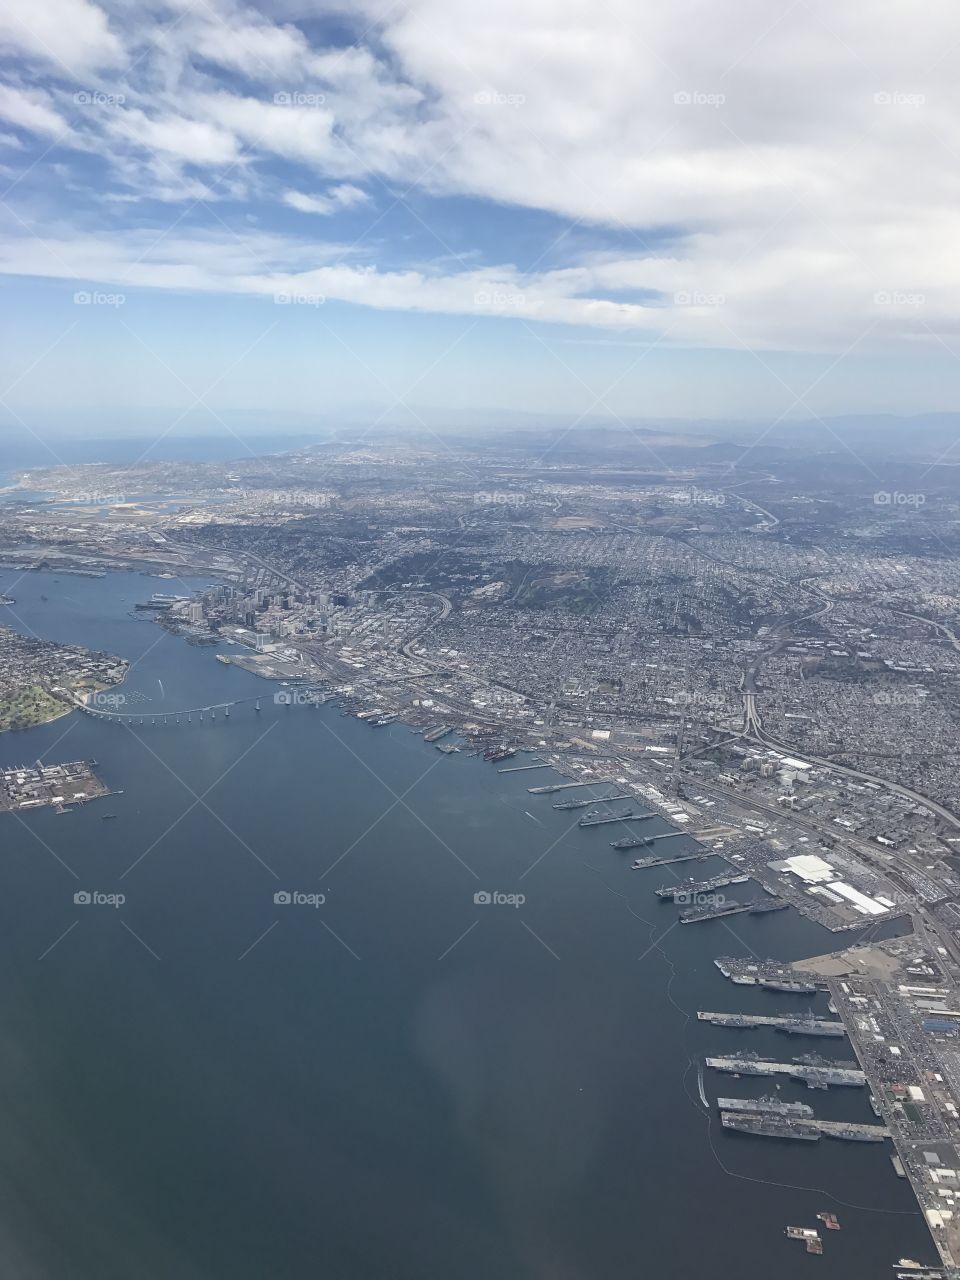 San Diego from sky